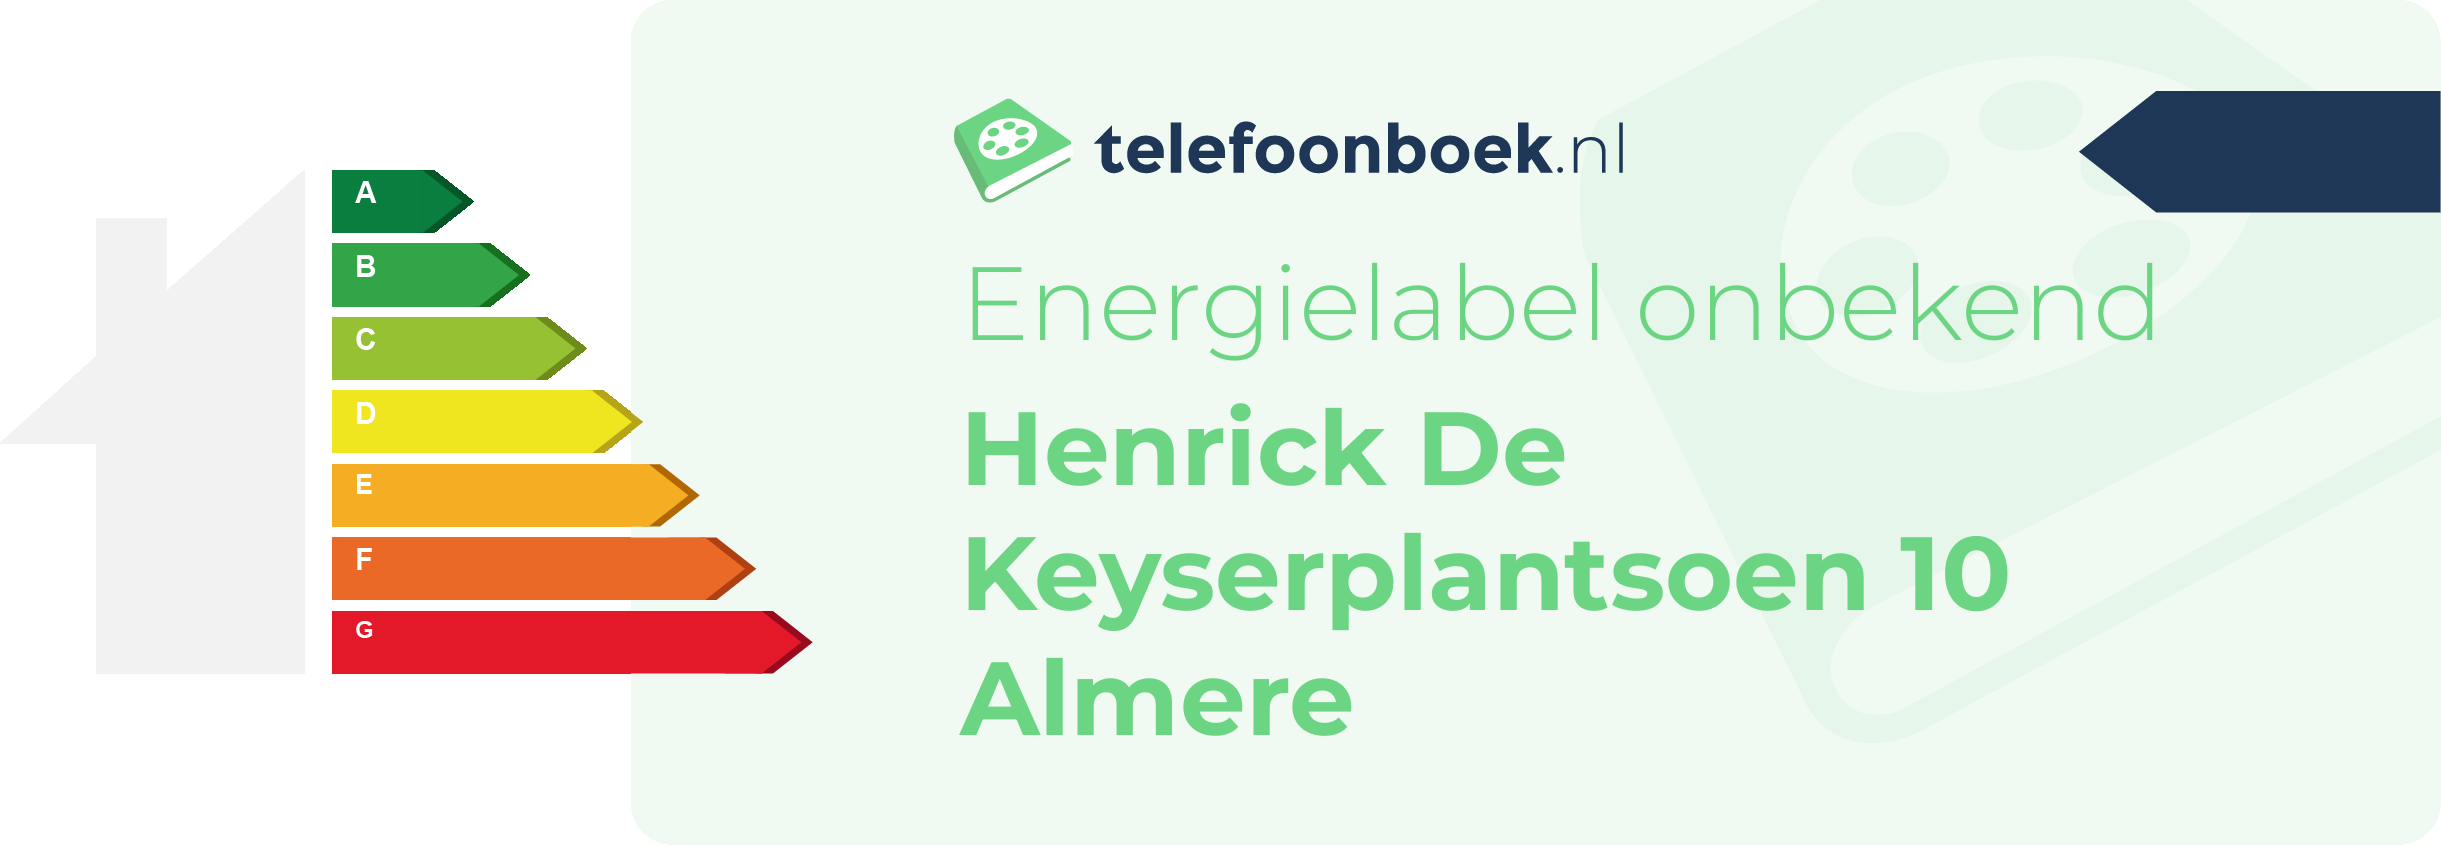 Energielabel Henrick De Keyserplantsoen 10 Almere